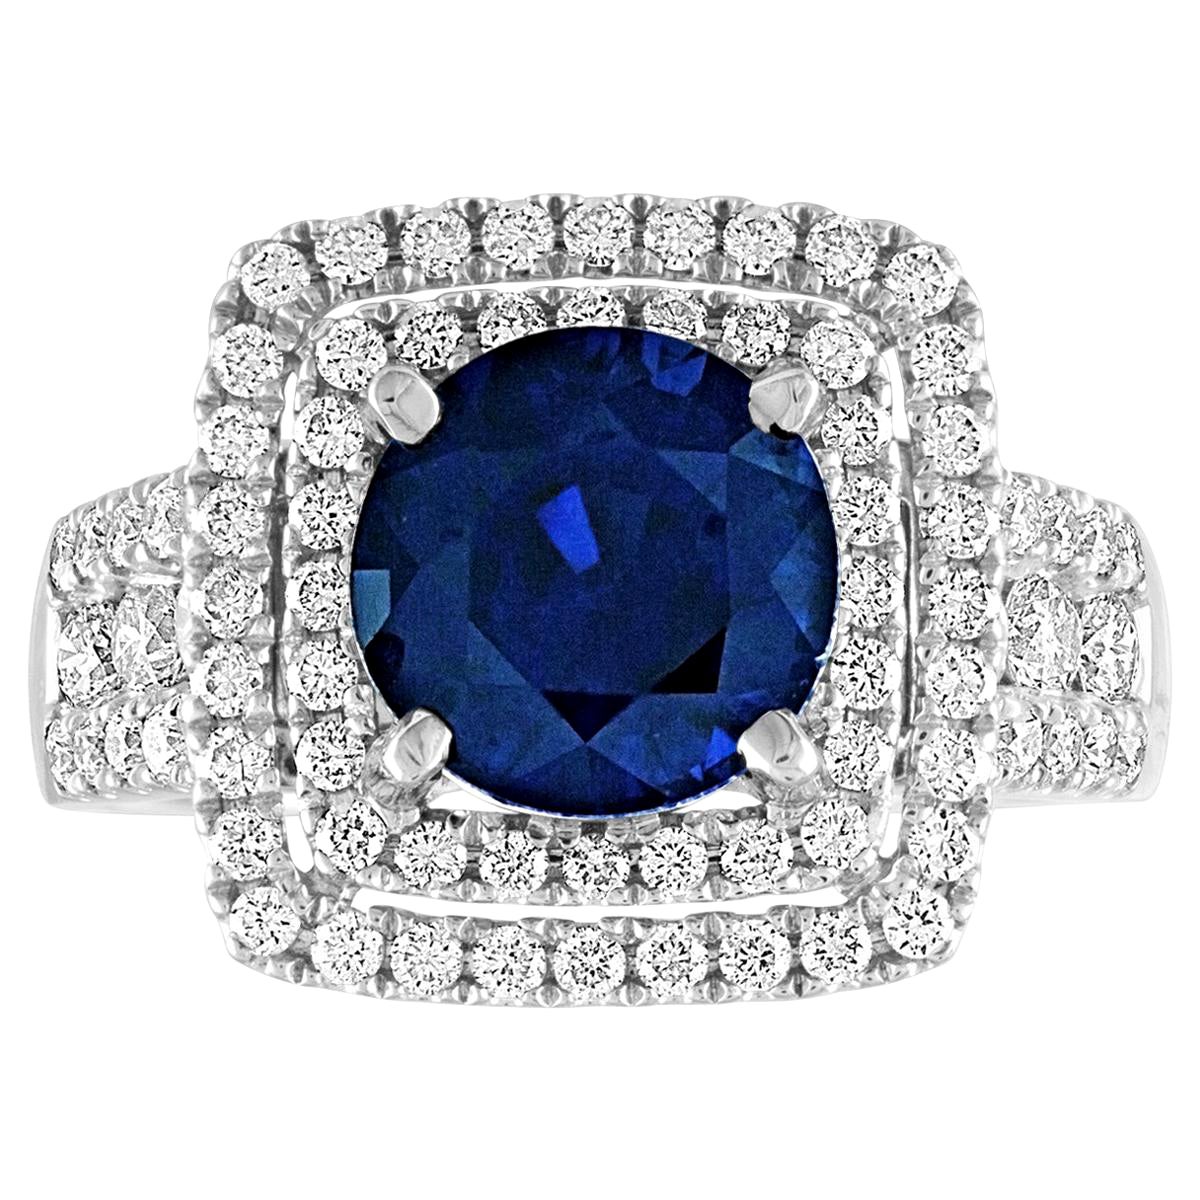 3.49 Carat Round Cut Blue Sapphire Diamond Gold Ring